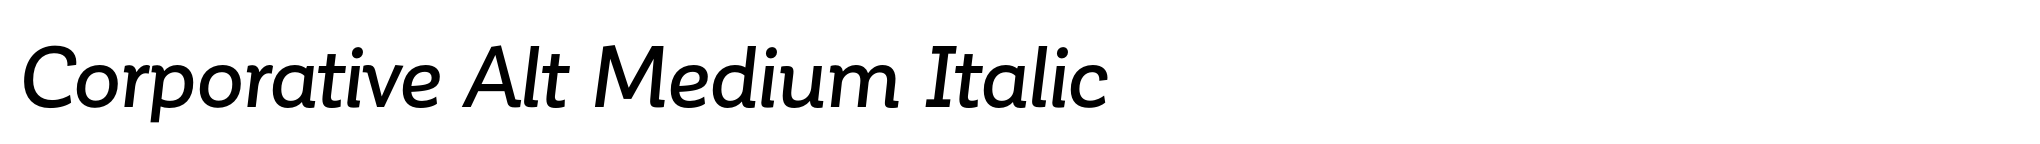 Corporative Alt Medium Italic image